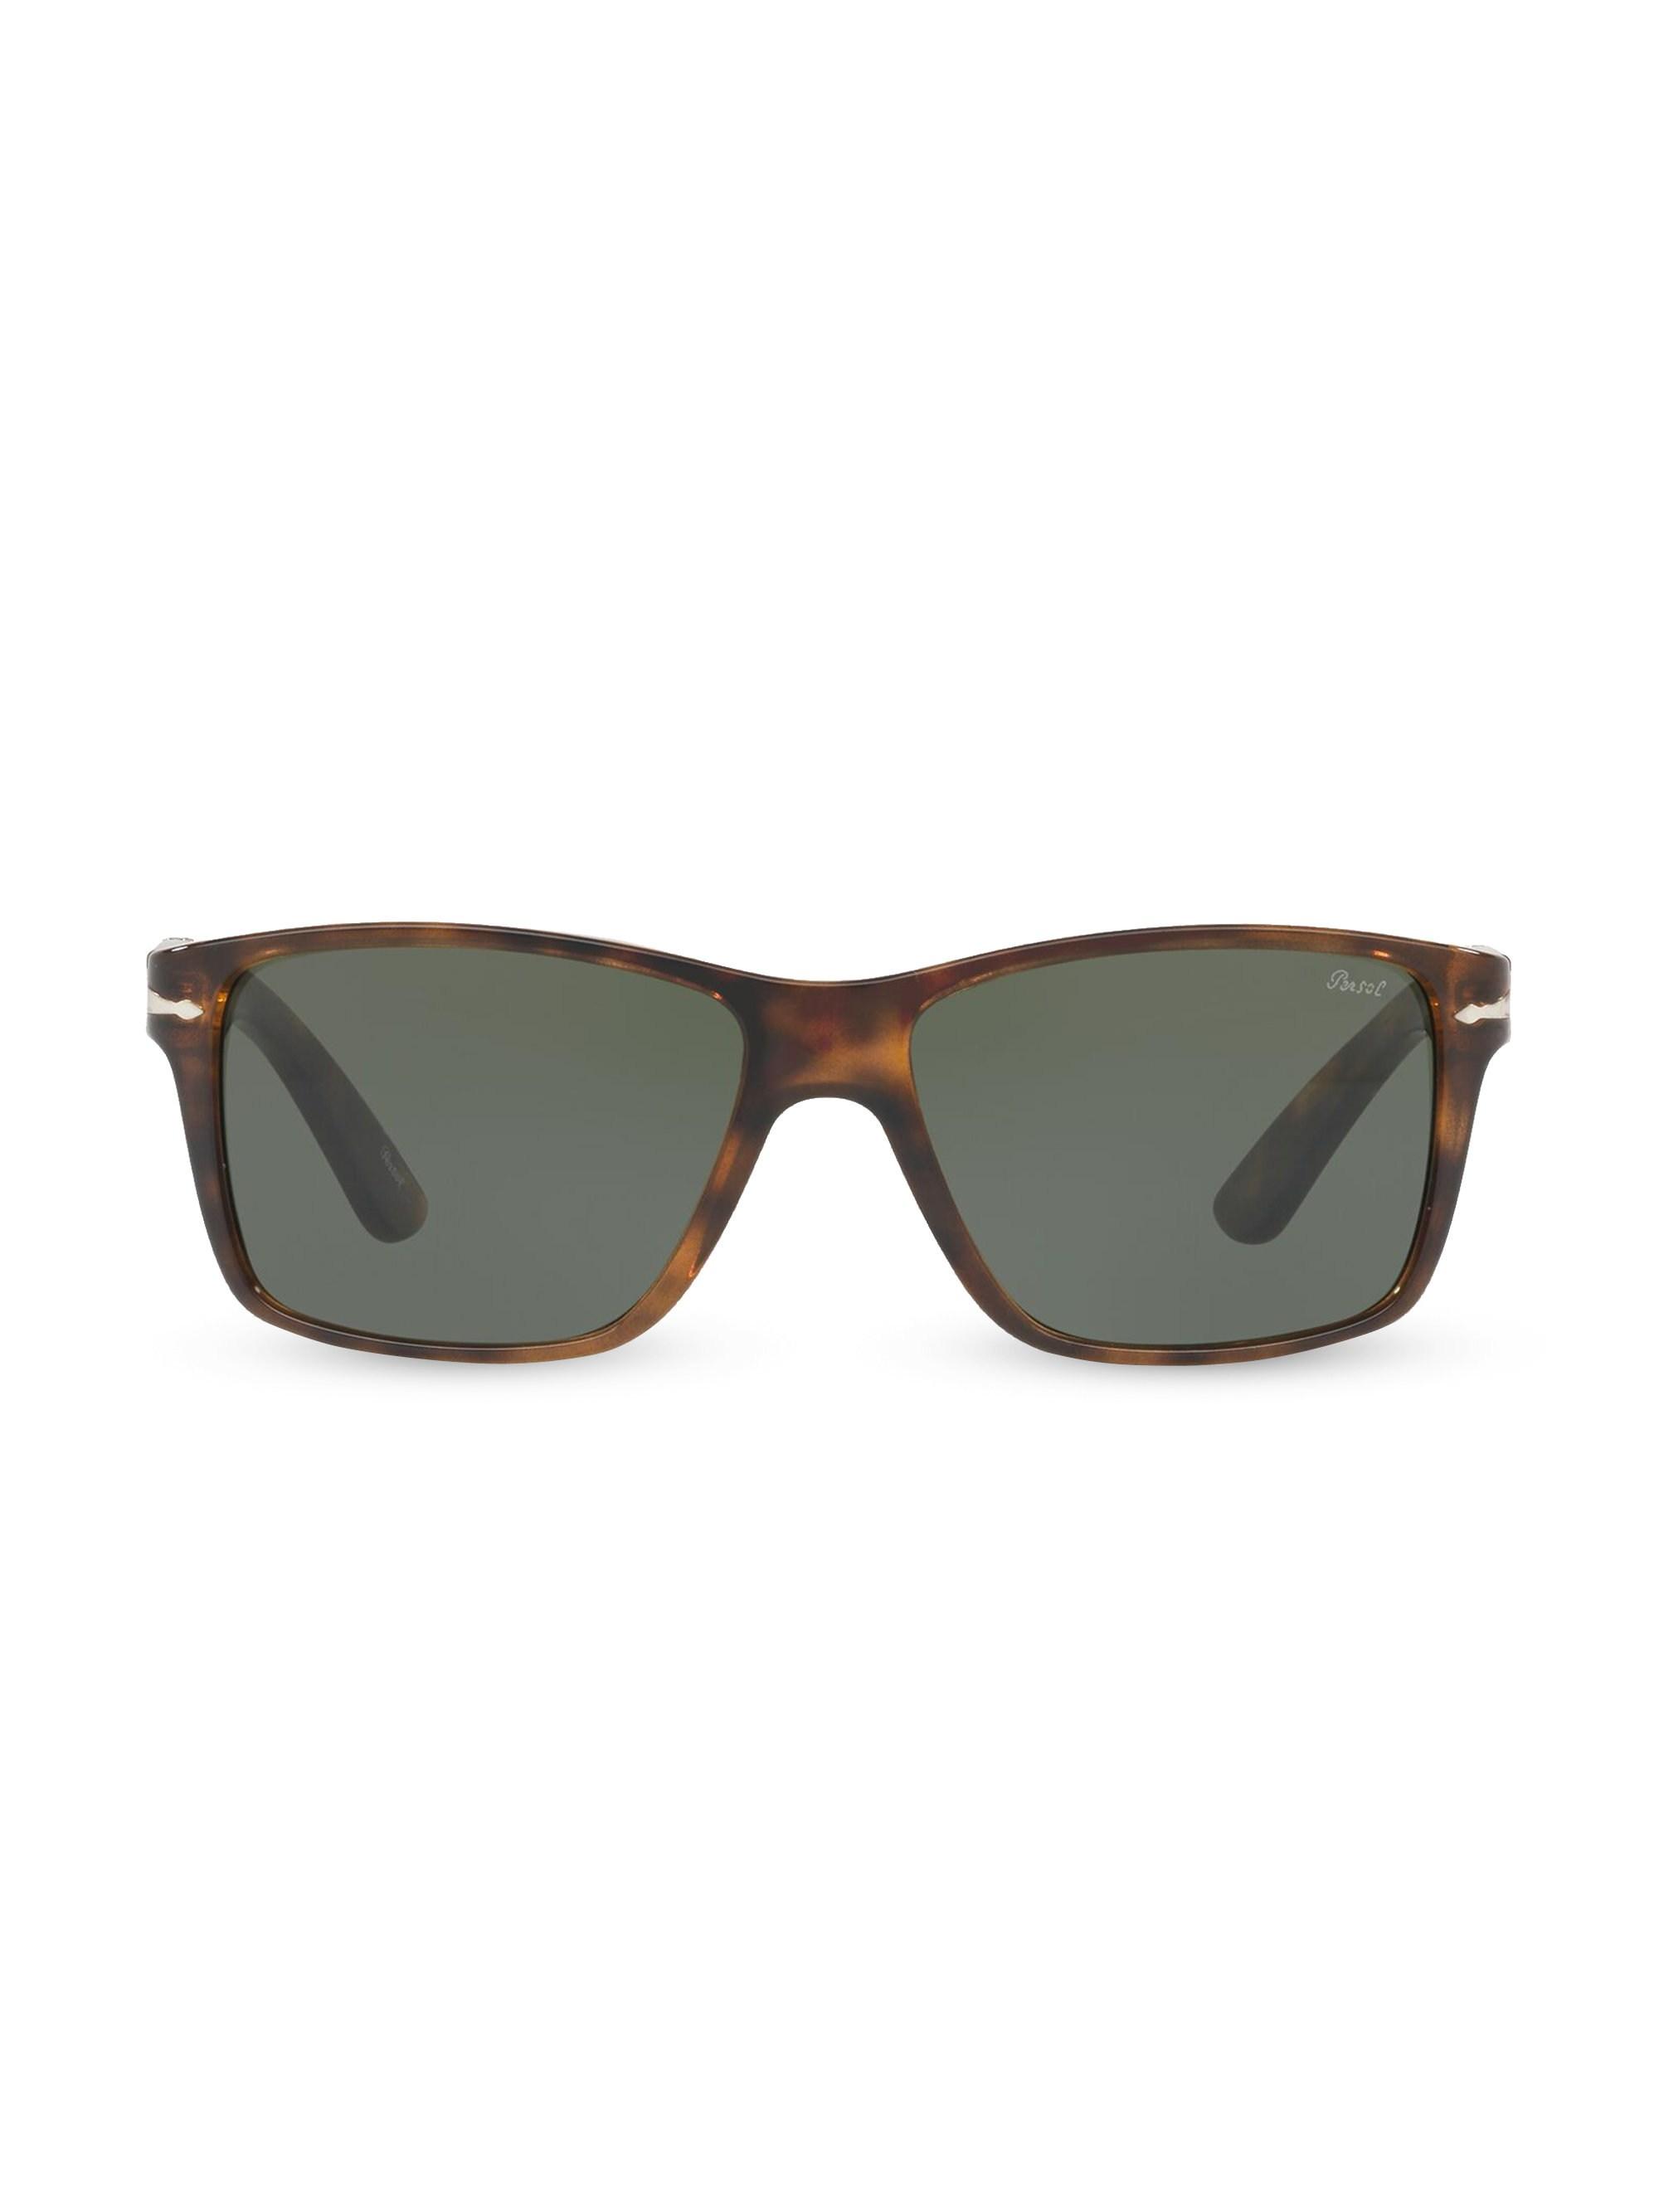 Persol Men S 58mm Rectangular Sunglasses Dark Havana In Brown For Men